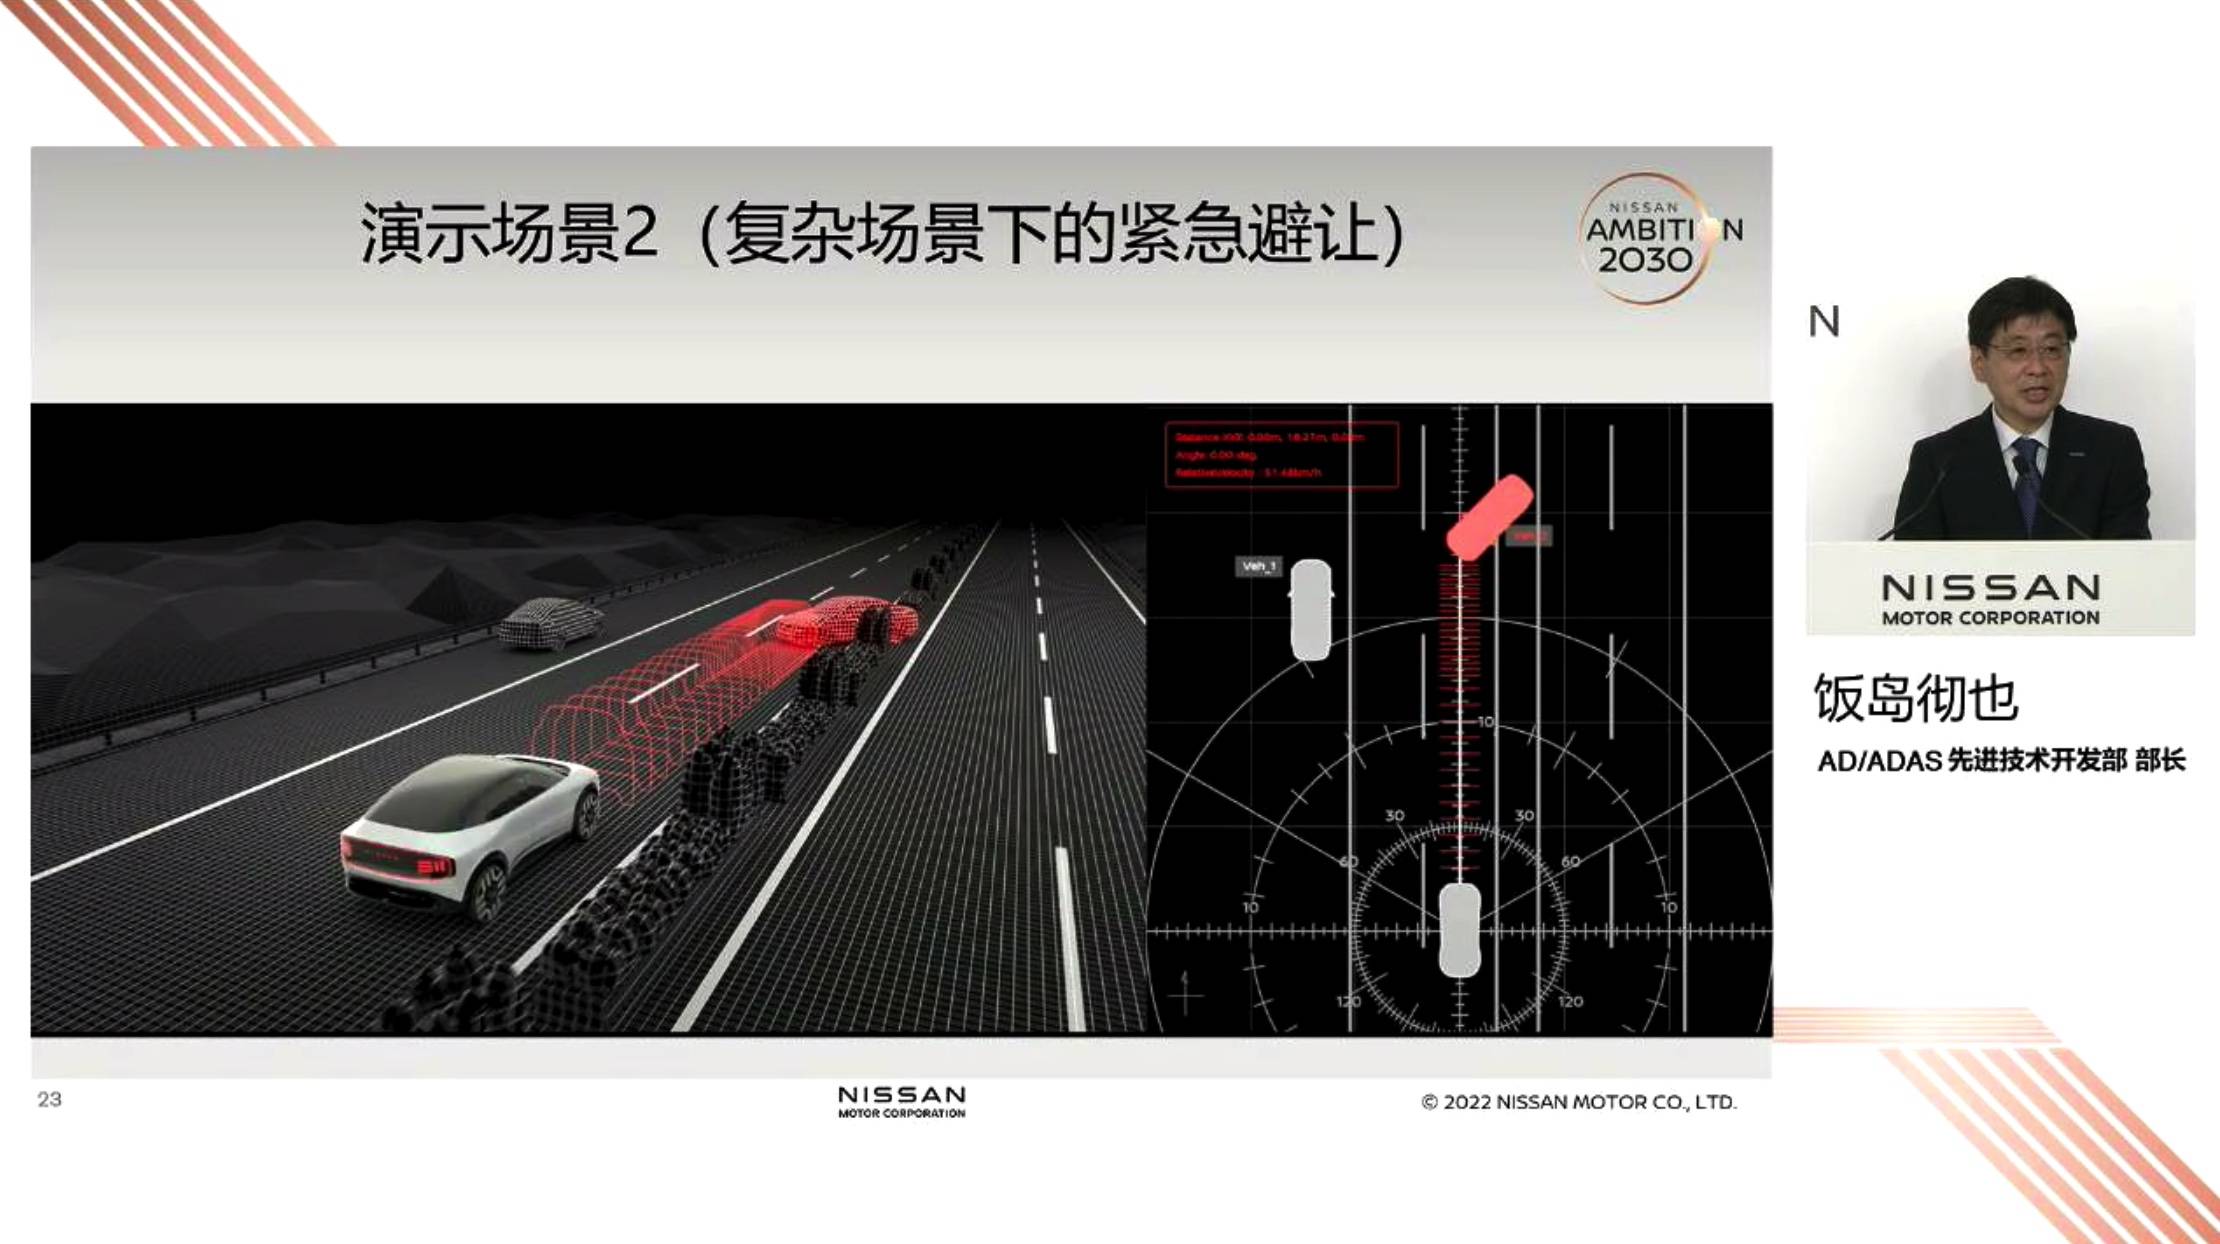 auto3 - Tesla risponde a “Accelerazione automatica a 170 km/h” / Weilai e Xiaopeng sono considerati concorrenti dal pubblico / Il motore rotativo tornerà a Mazda